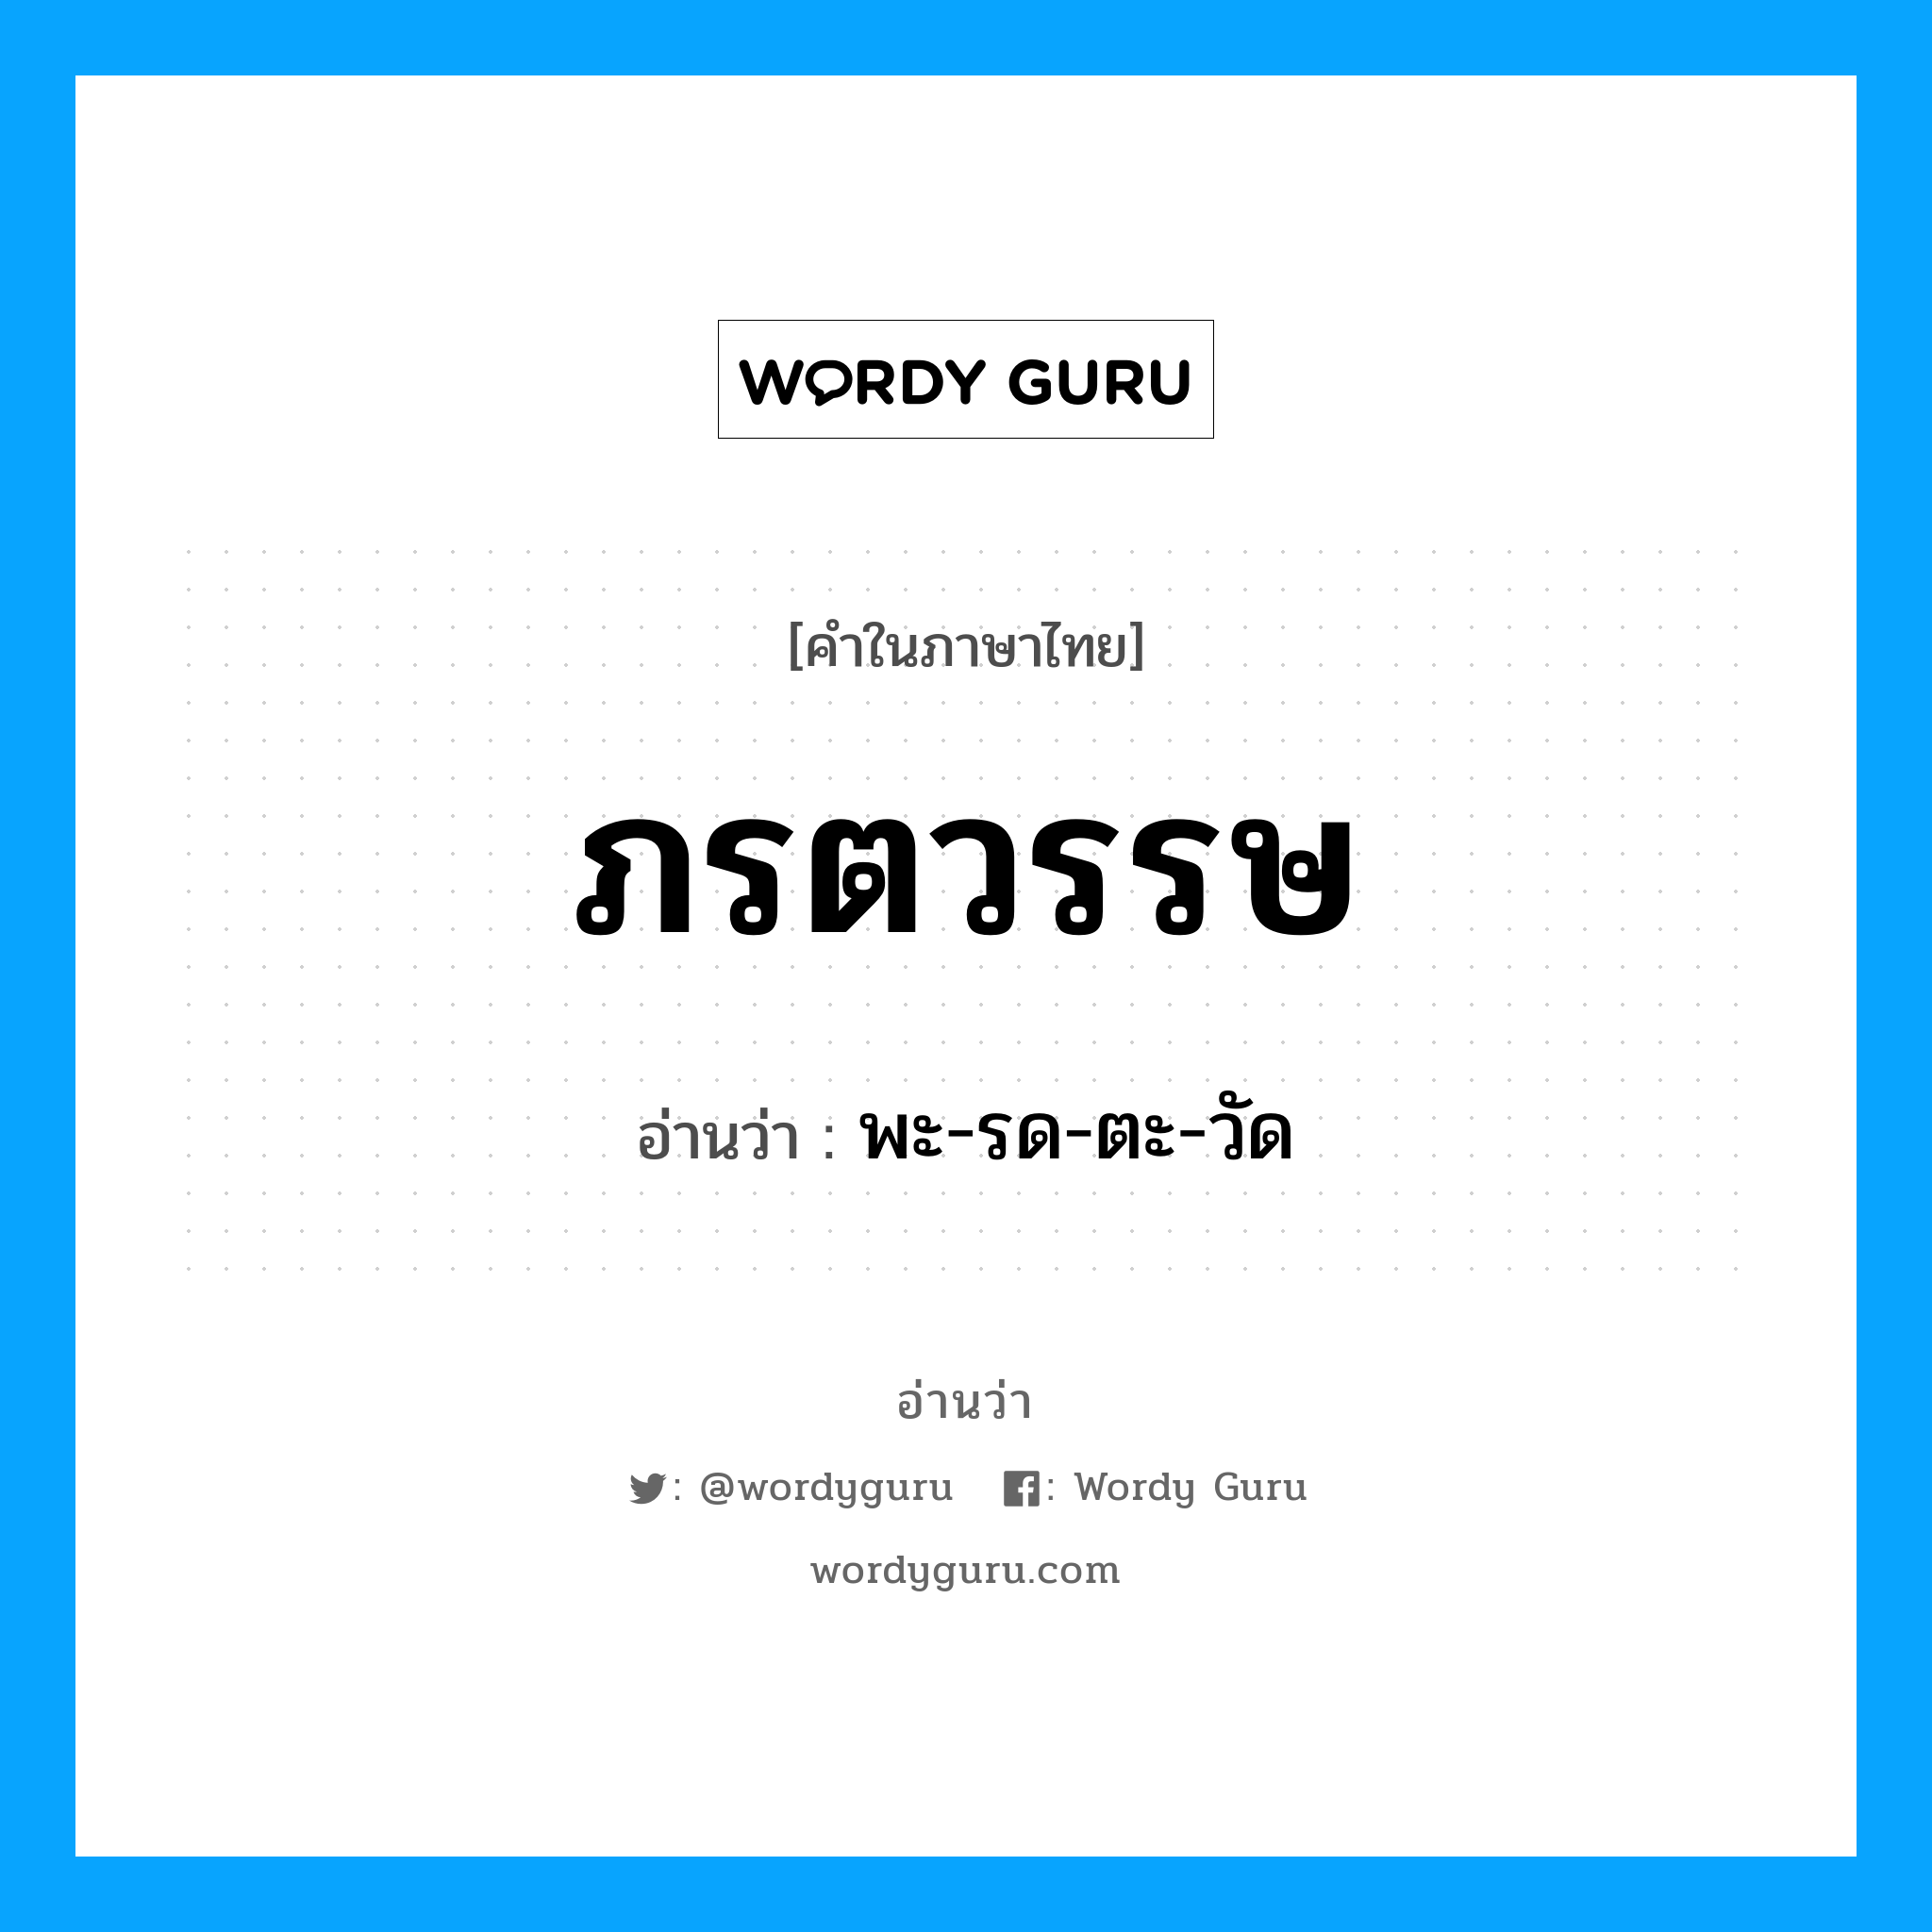 พะ-รด-ตะ-วัด เป็นคำอ่านของคำไหน?, คำในภาษาไทย พะ-รด-ตะ-วัด อ่านว่า ภรตวรรษ